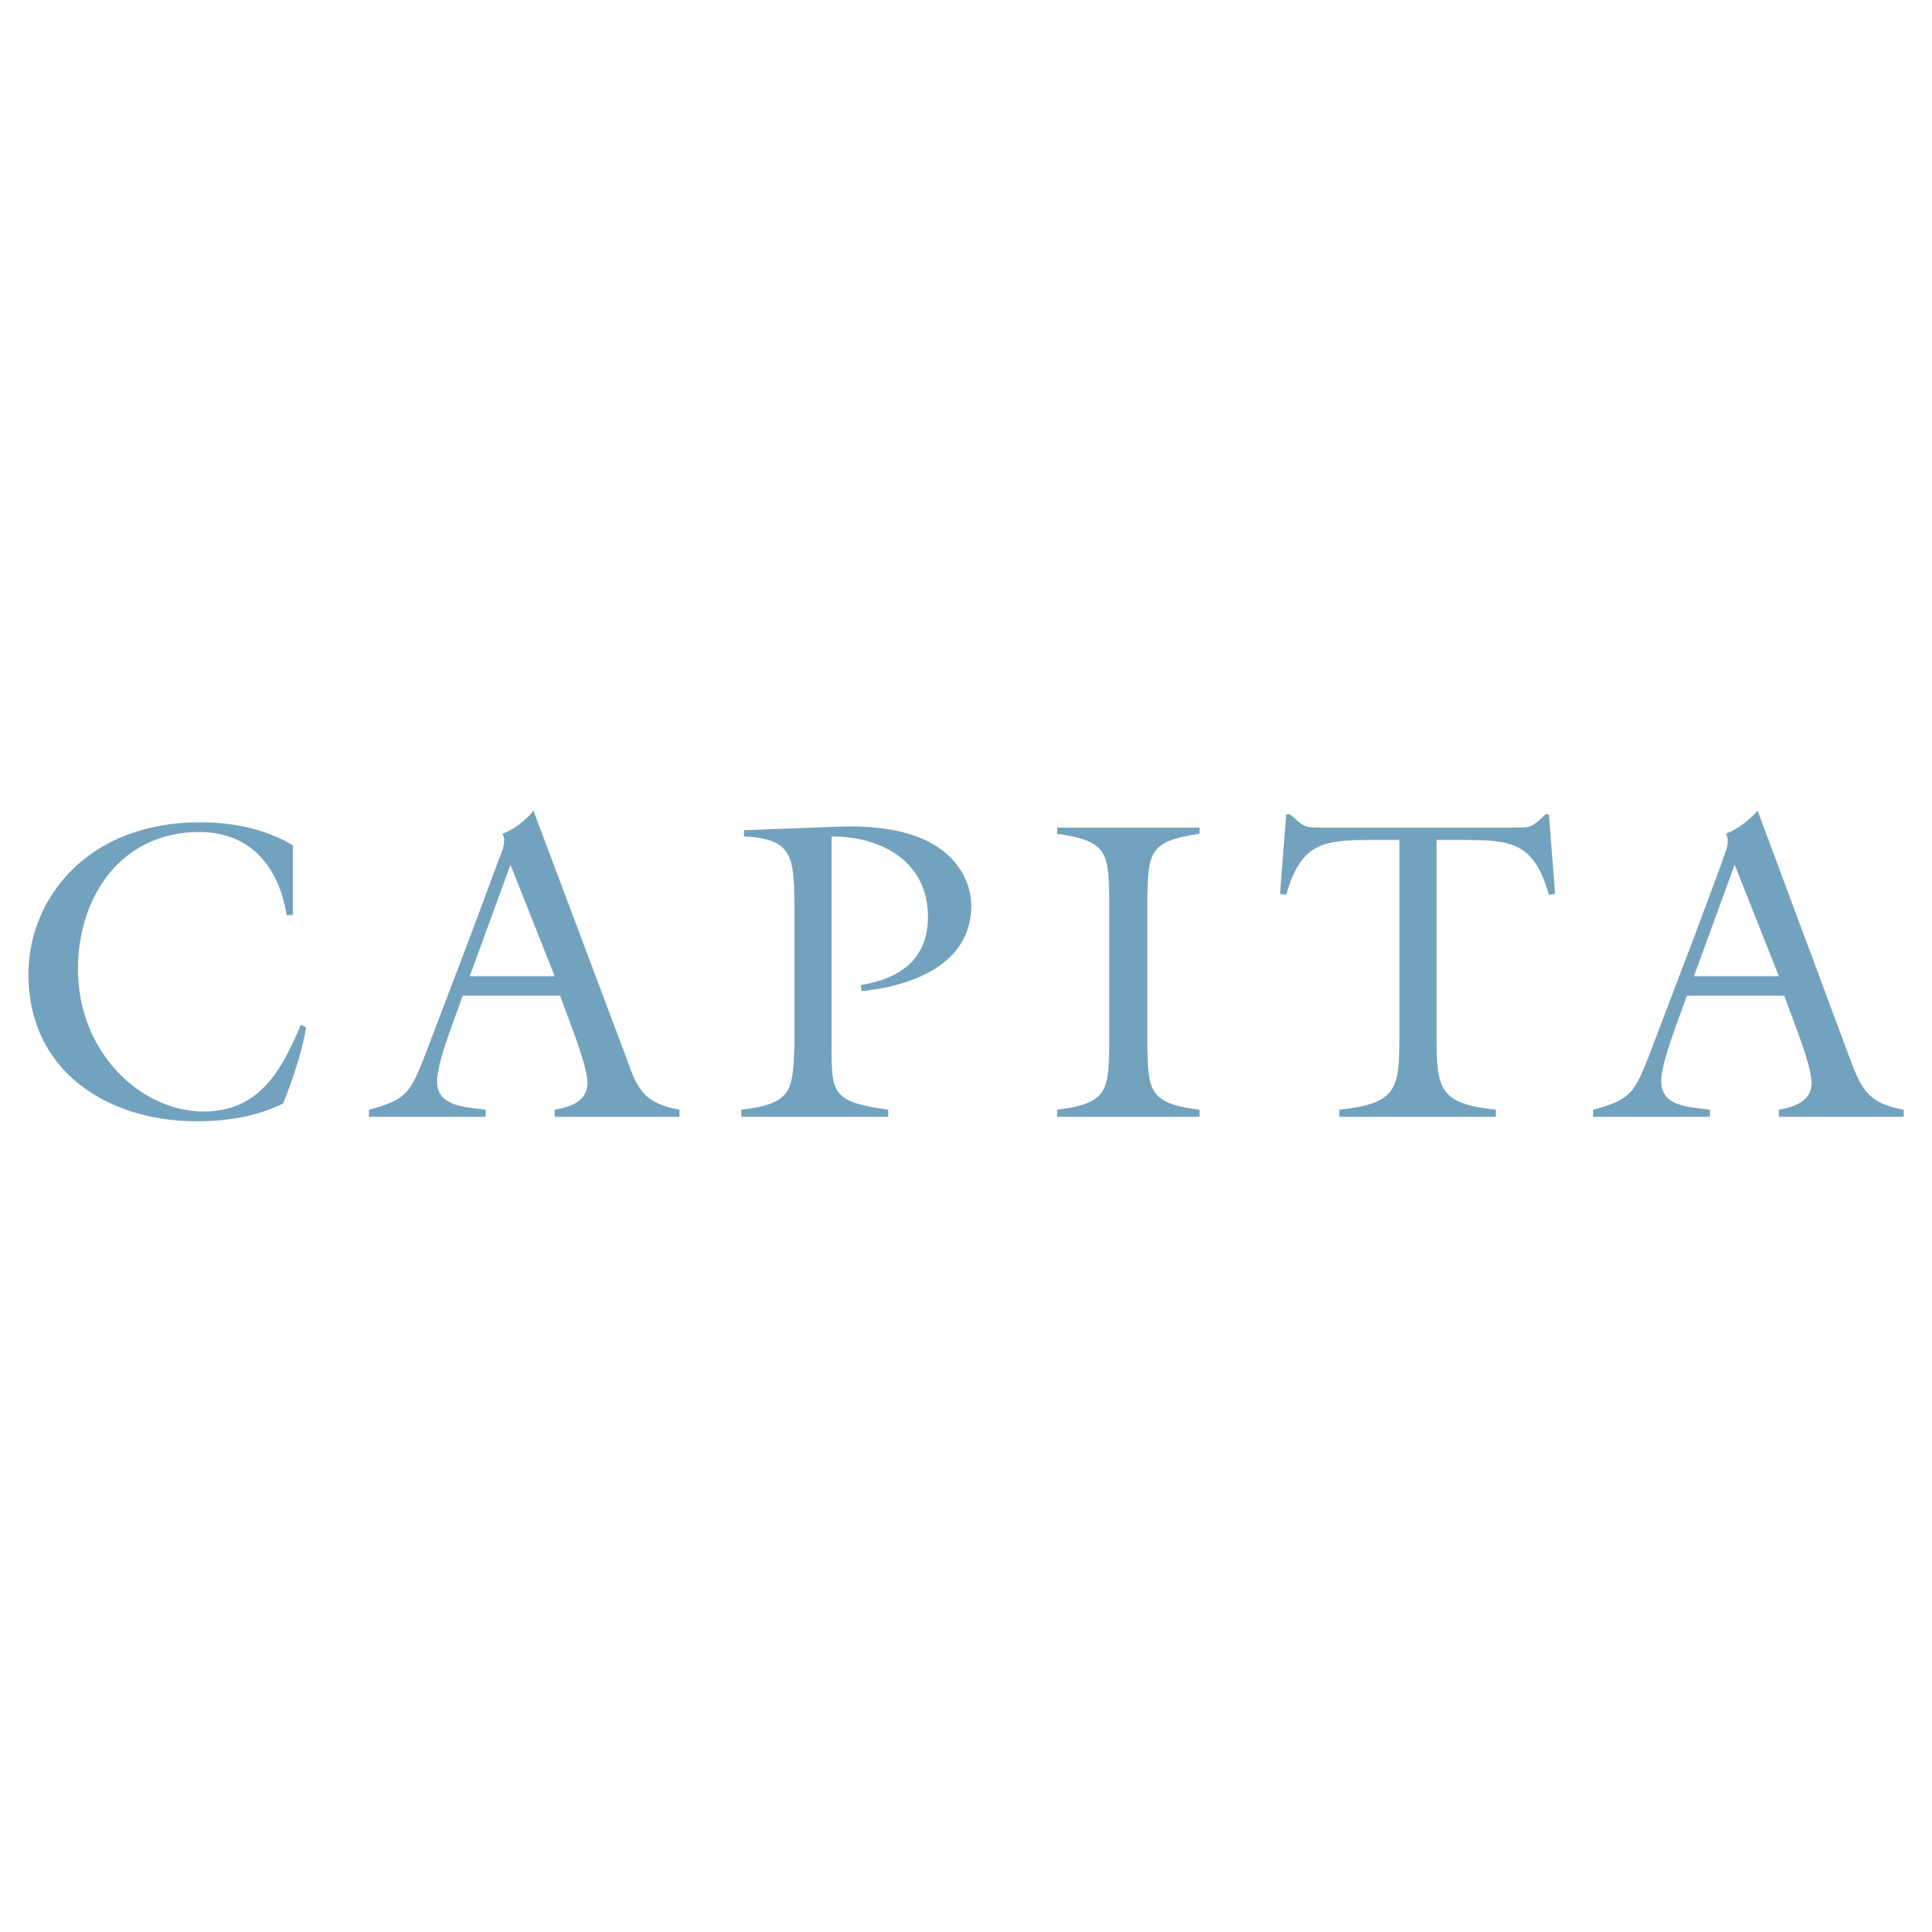 Capita Logo - Capita Logo PNG Transparent & SVG Vector